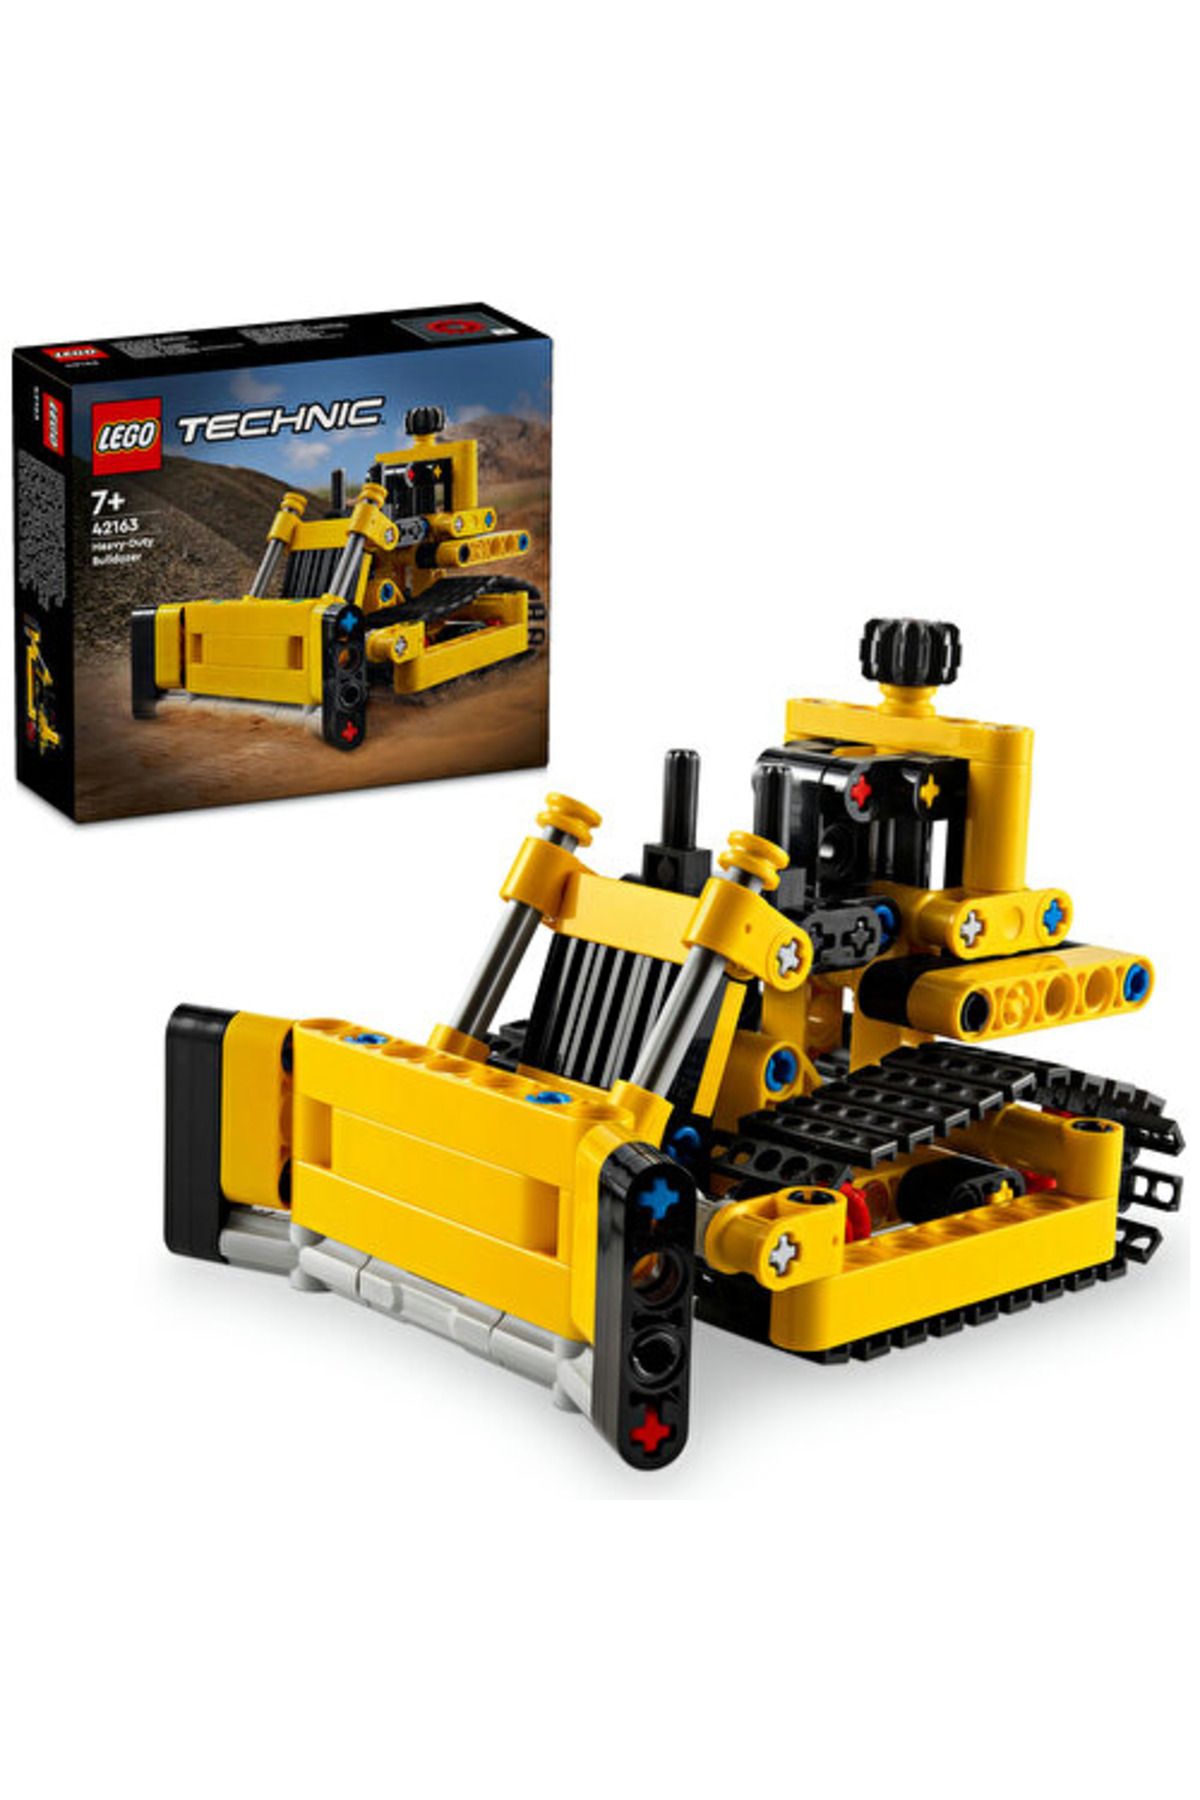 LEGO ® Technic Ağır İş Buldozeri 42163  - 7 Yaş ve Üzeri İçin Yapım Seti (195 Parça)